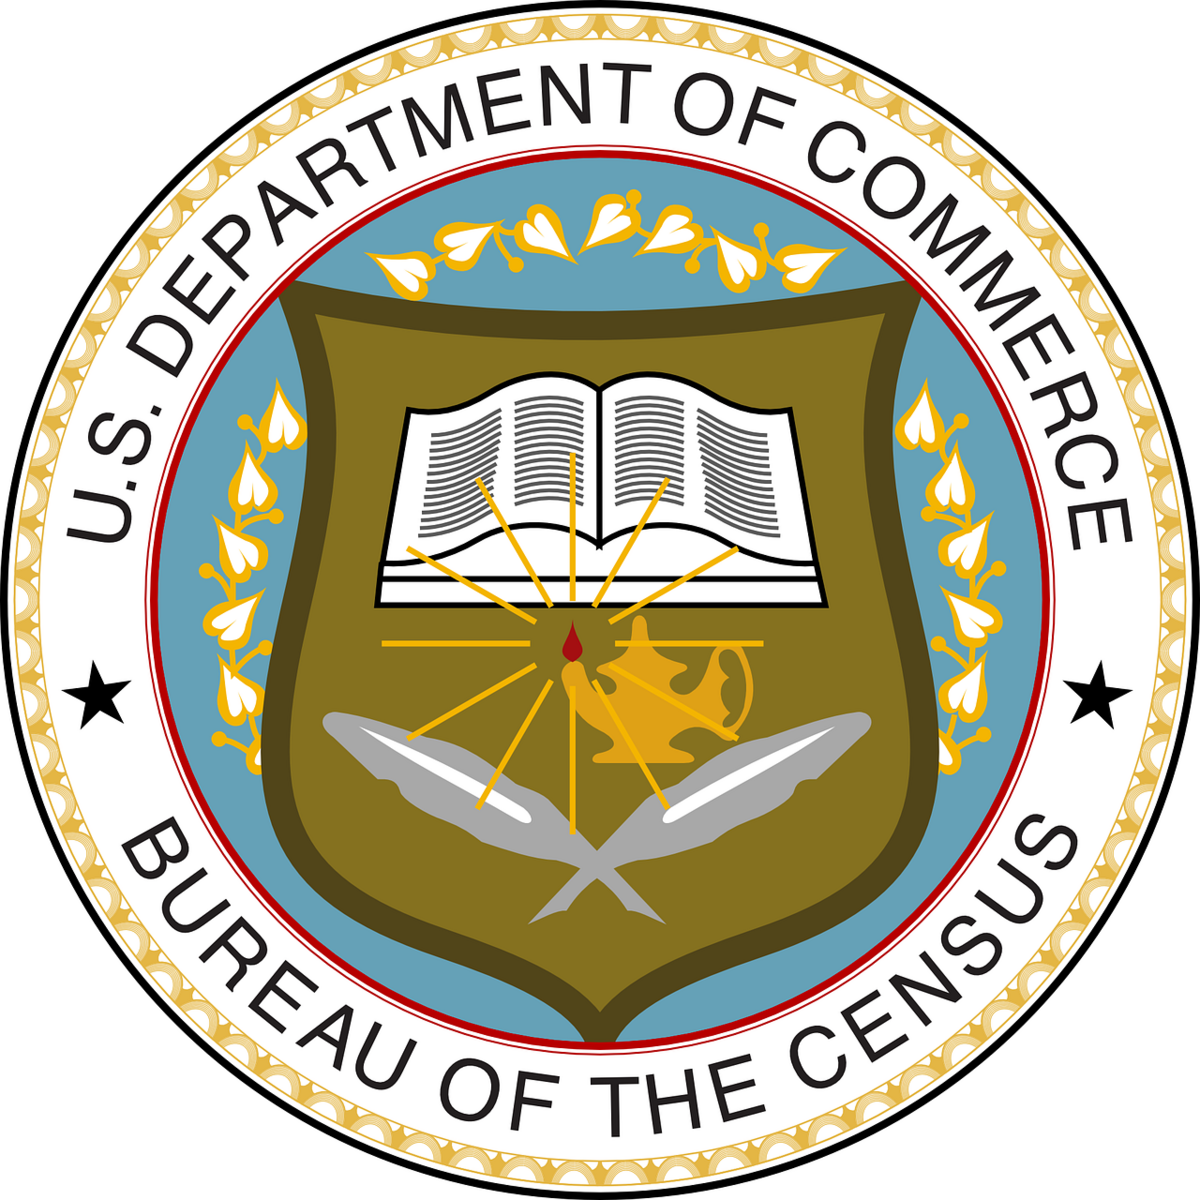 U.S. Department of Commerce, Bureau of the Census seal